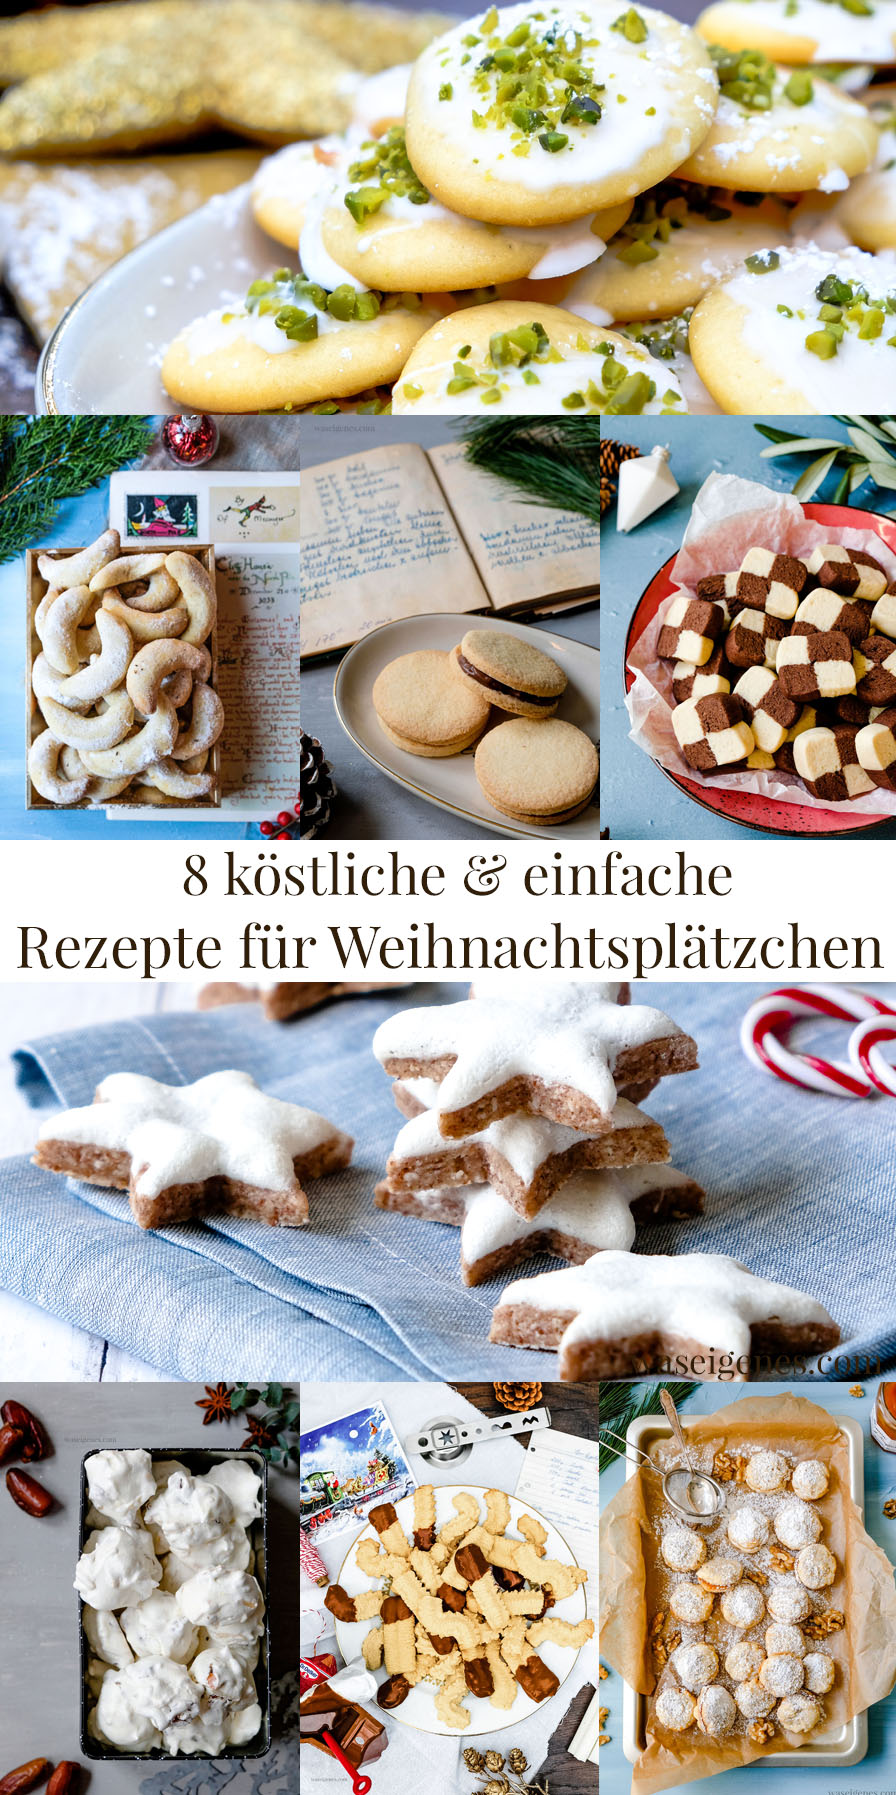 8 köstliche & einfache Weihnachtsplätzchen Rezepte - waseigenes.com